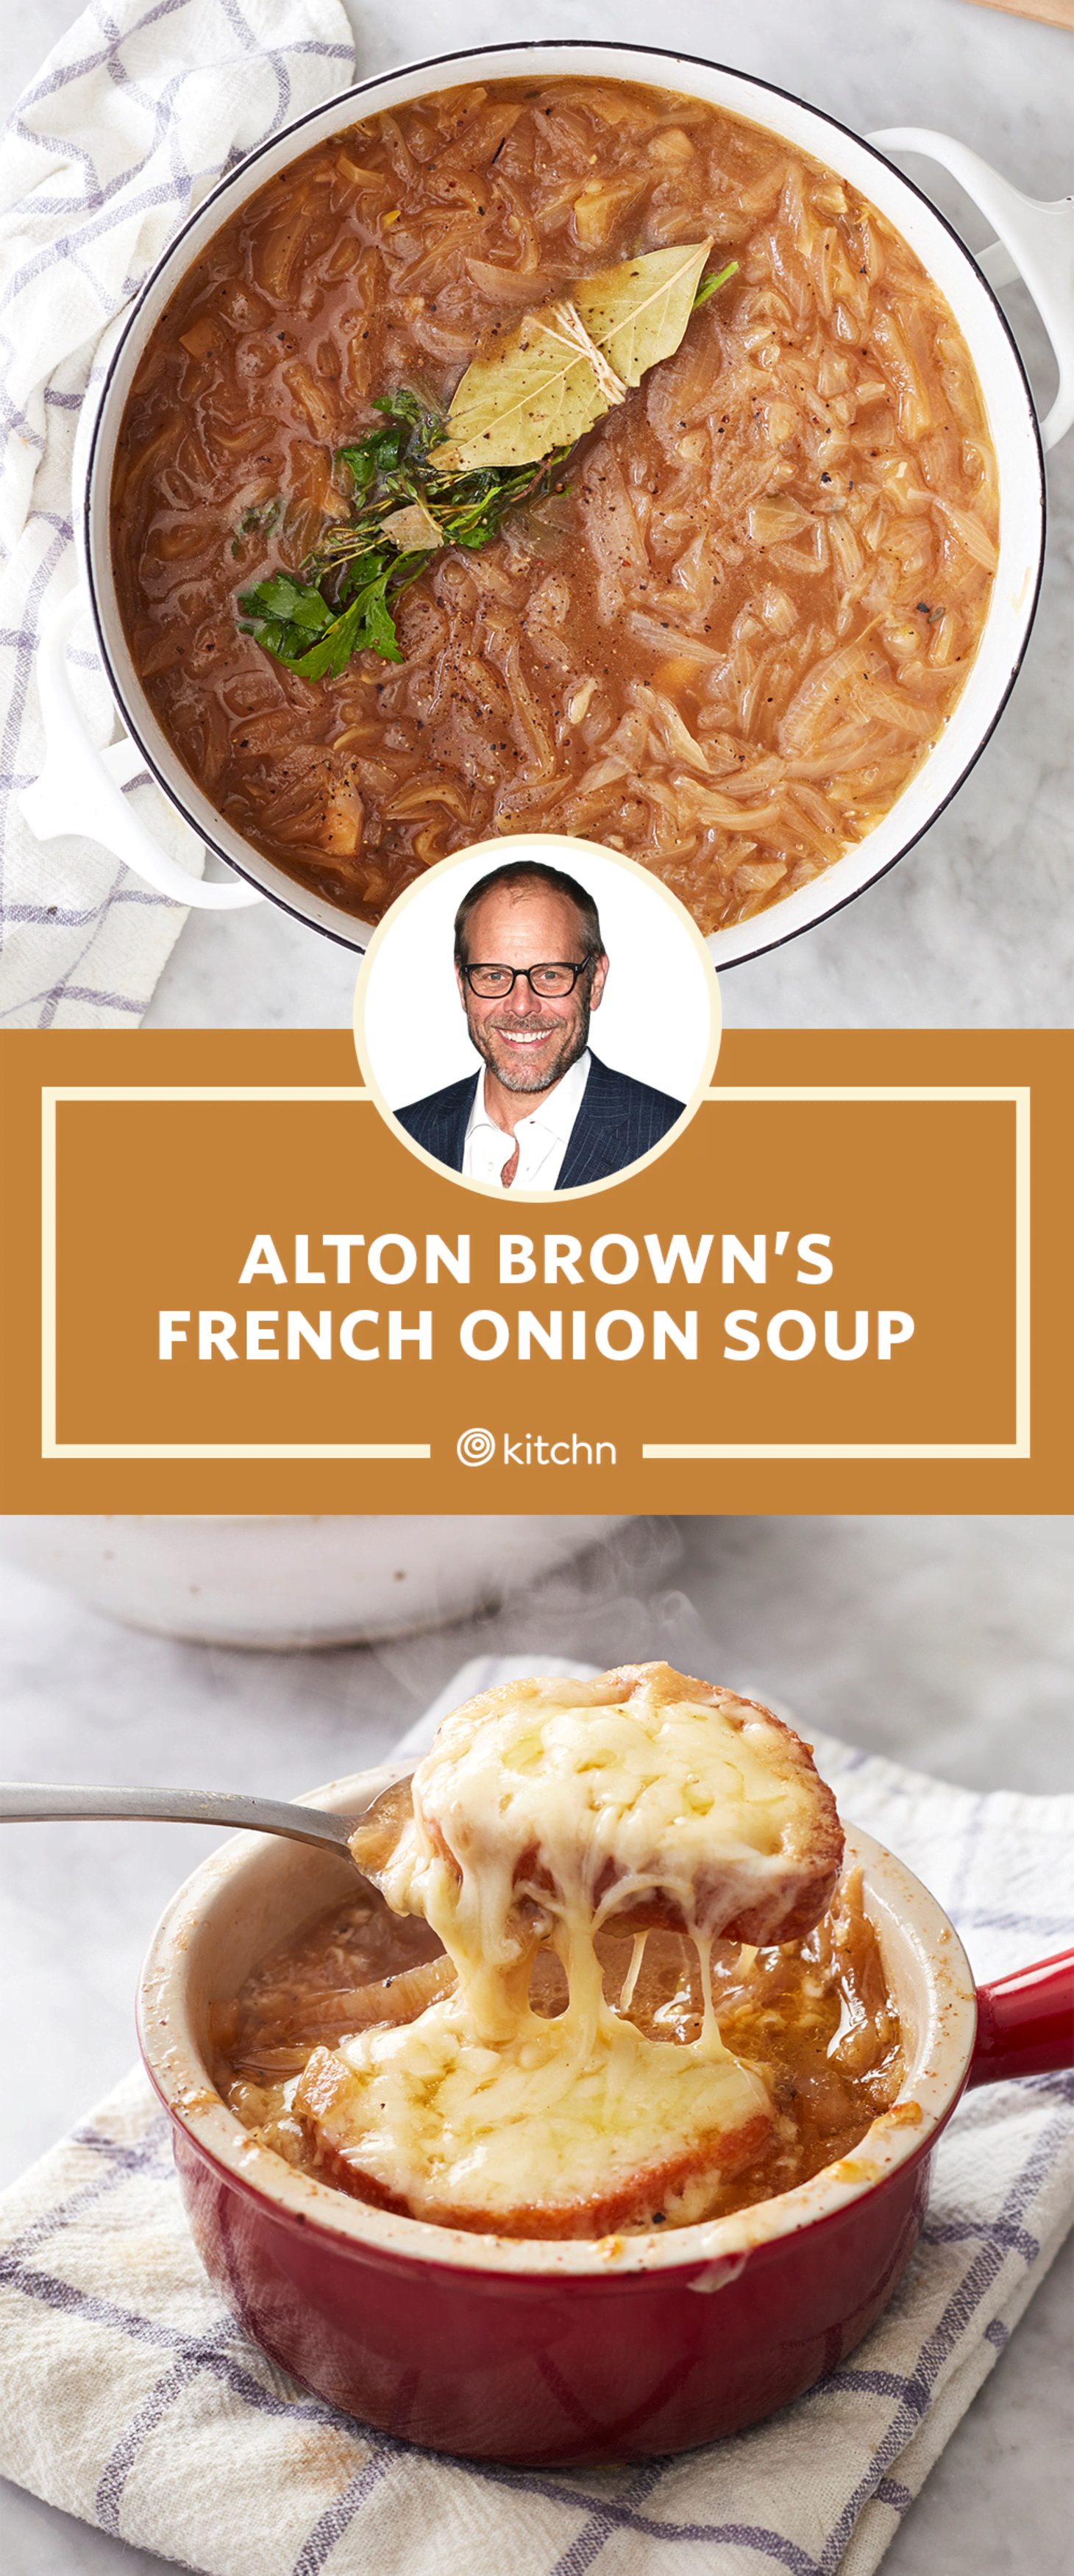 K Photo Series 2020 01 Battle French Onion Soup FrenchOnion ALTON